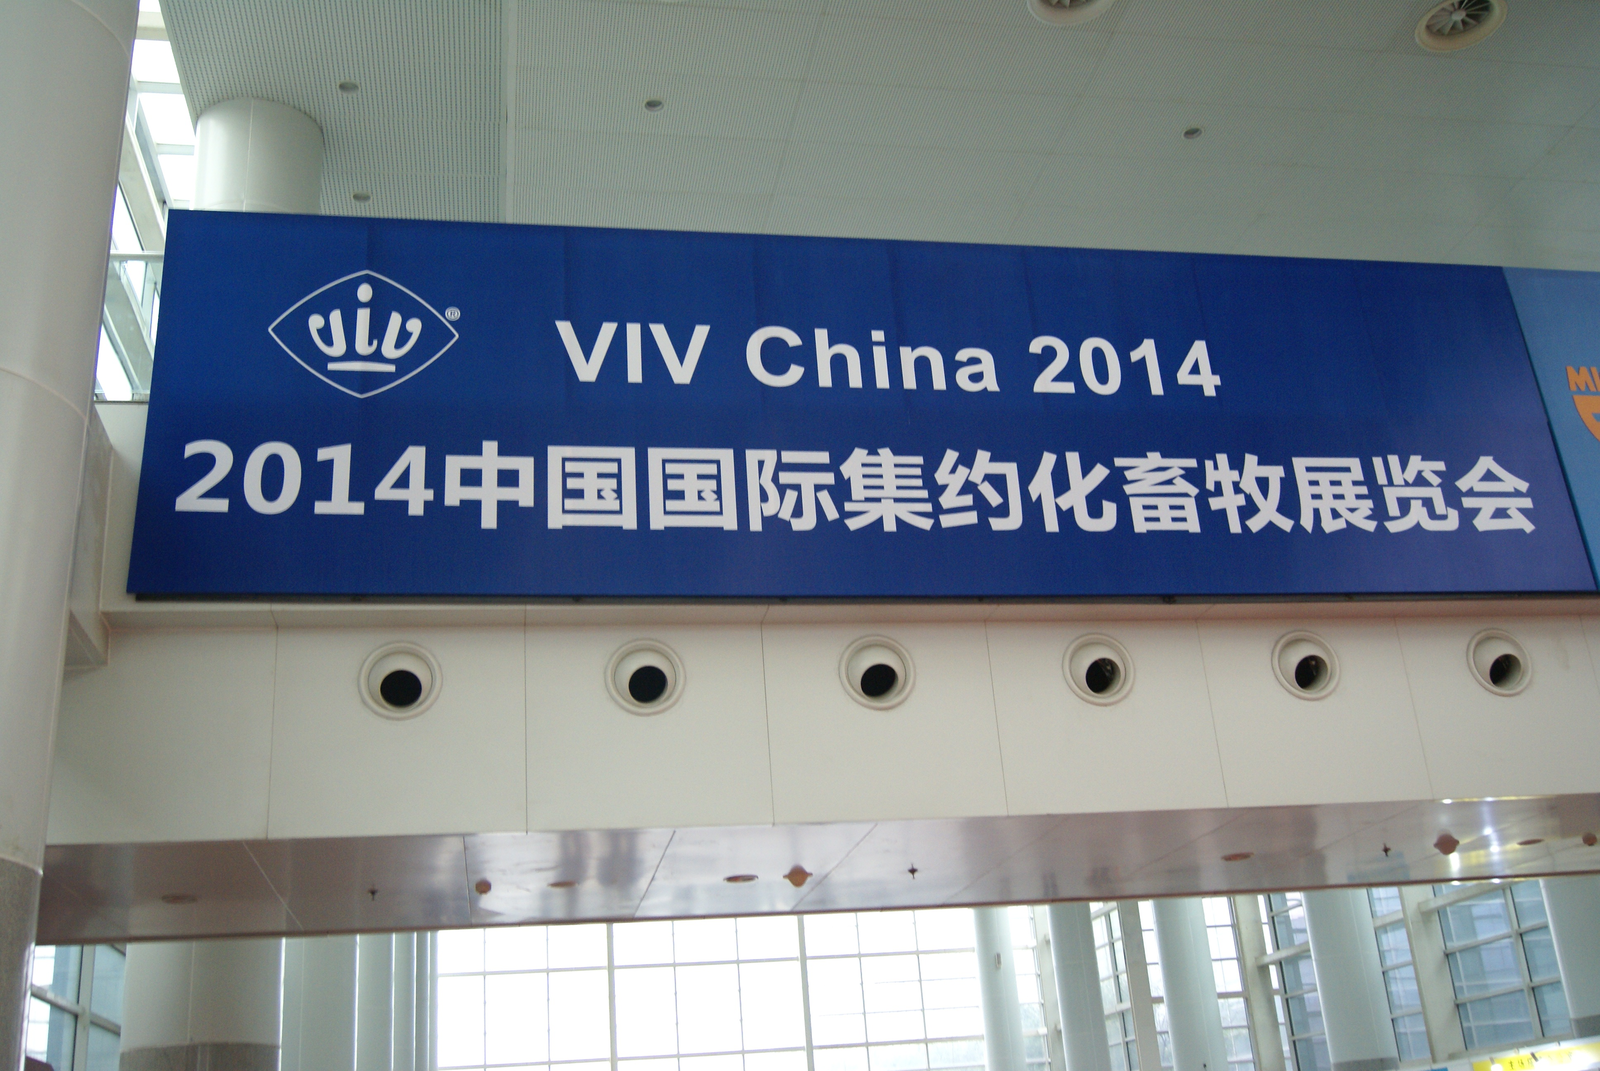 VIV China 2014 kicks off in Beijing